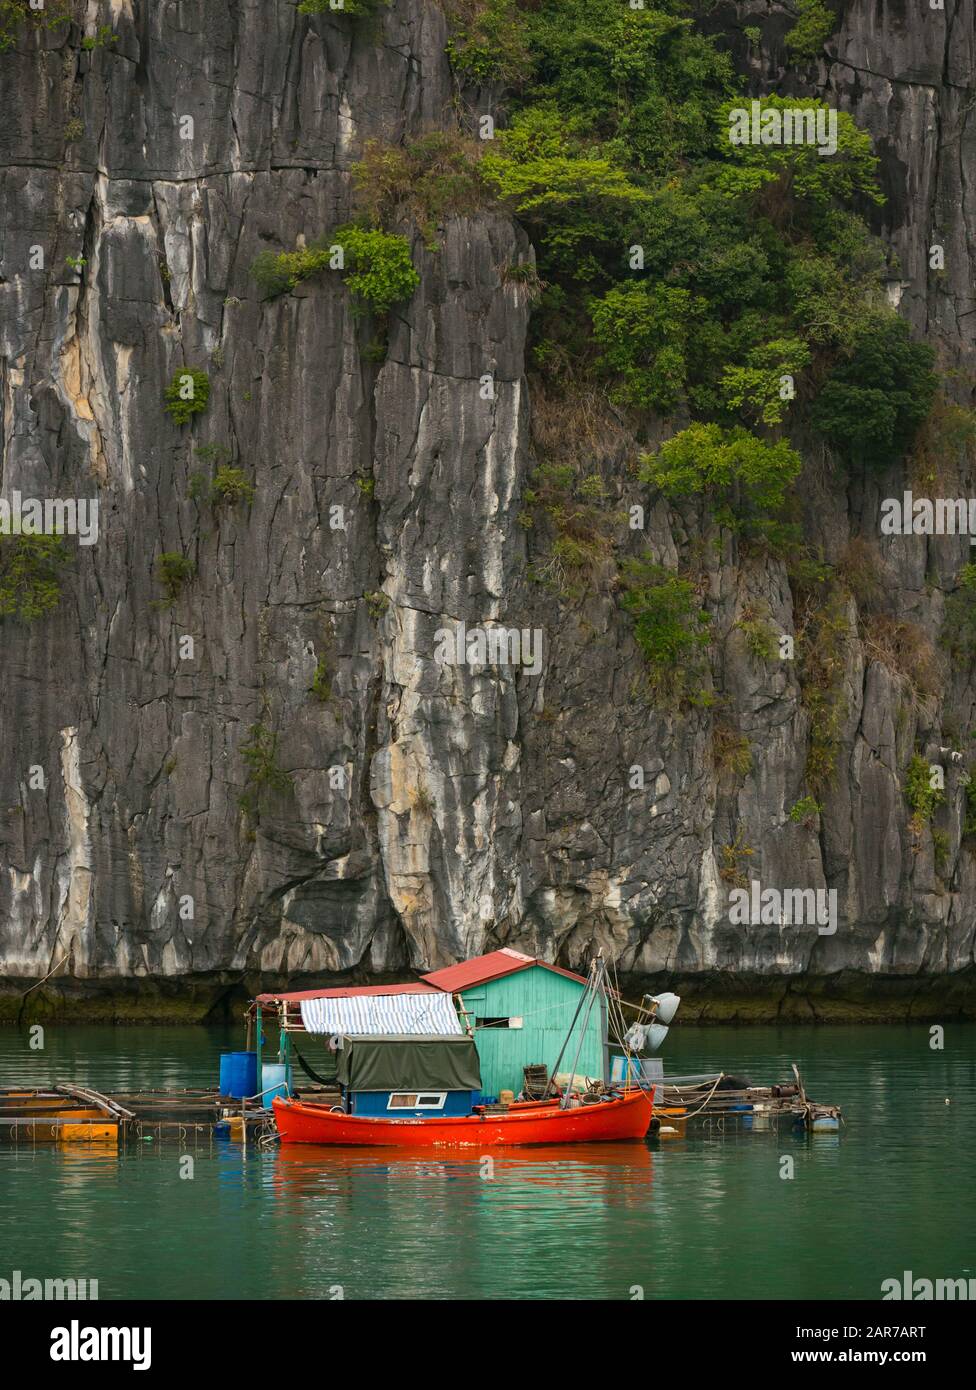 Granja de peces con piedra caliza escarpada acantilado, Lan ha Bay, Vietnam, Asia Foto de stock